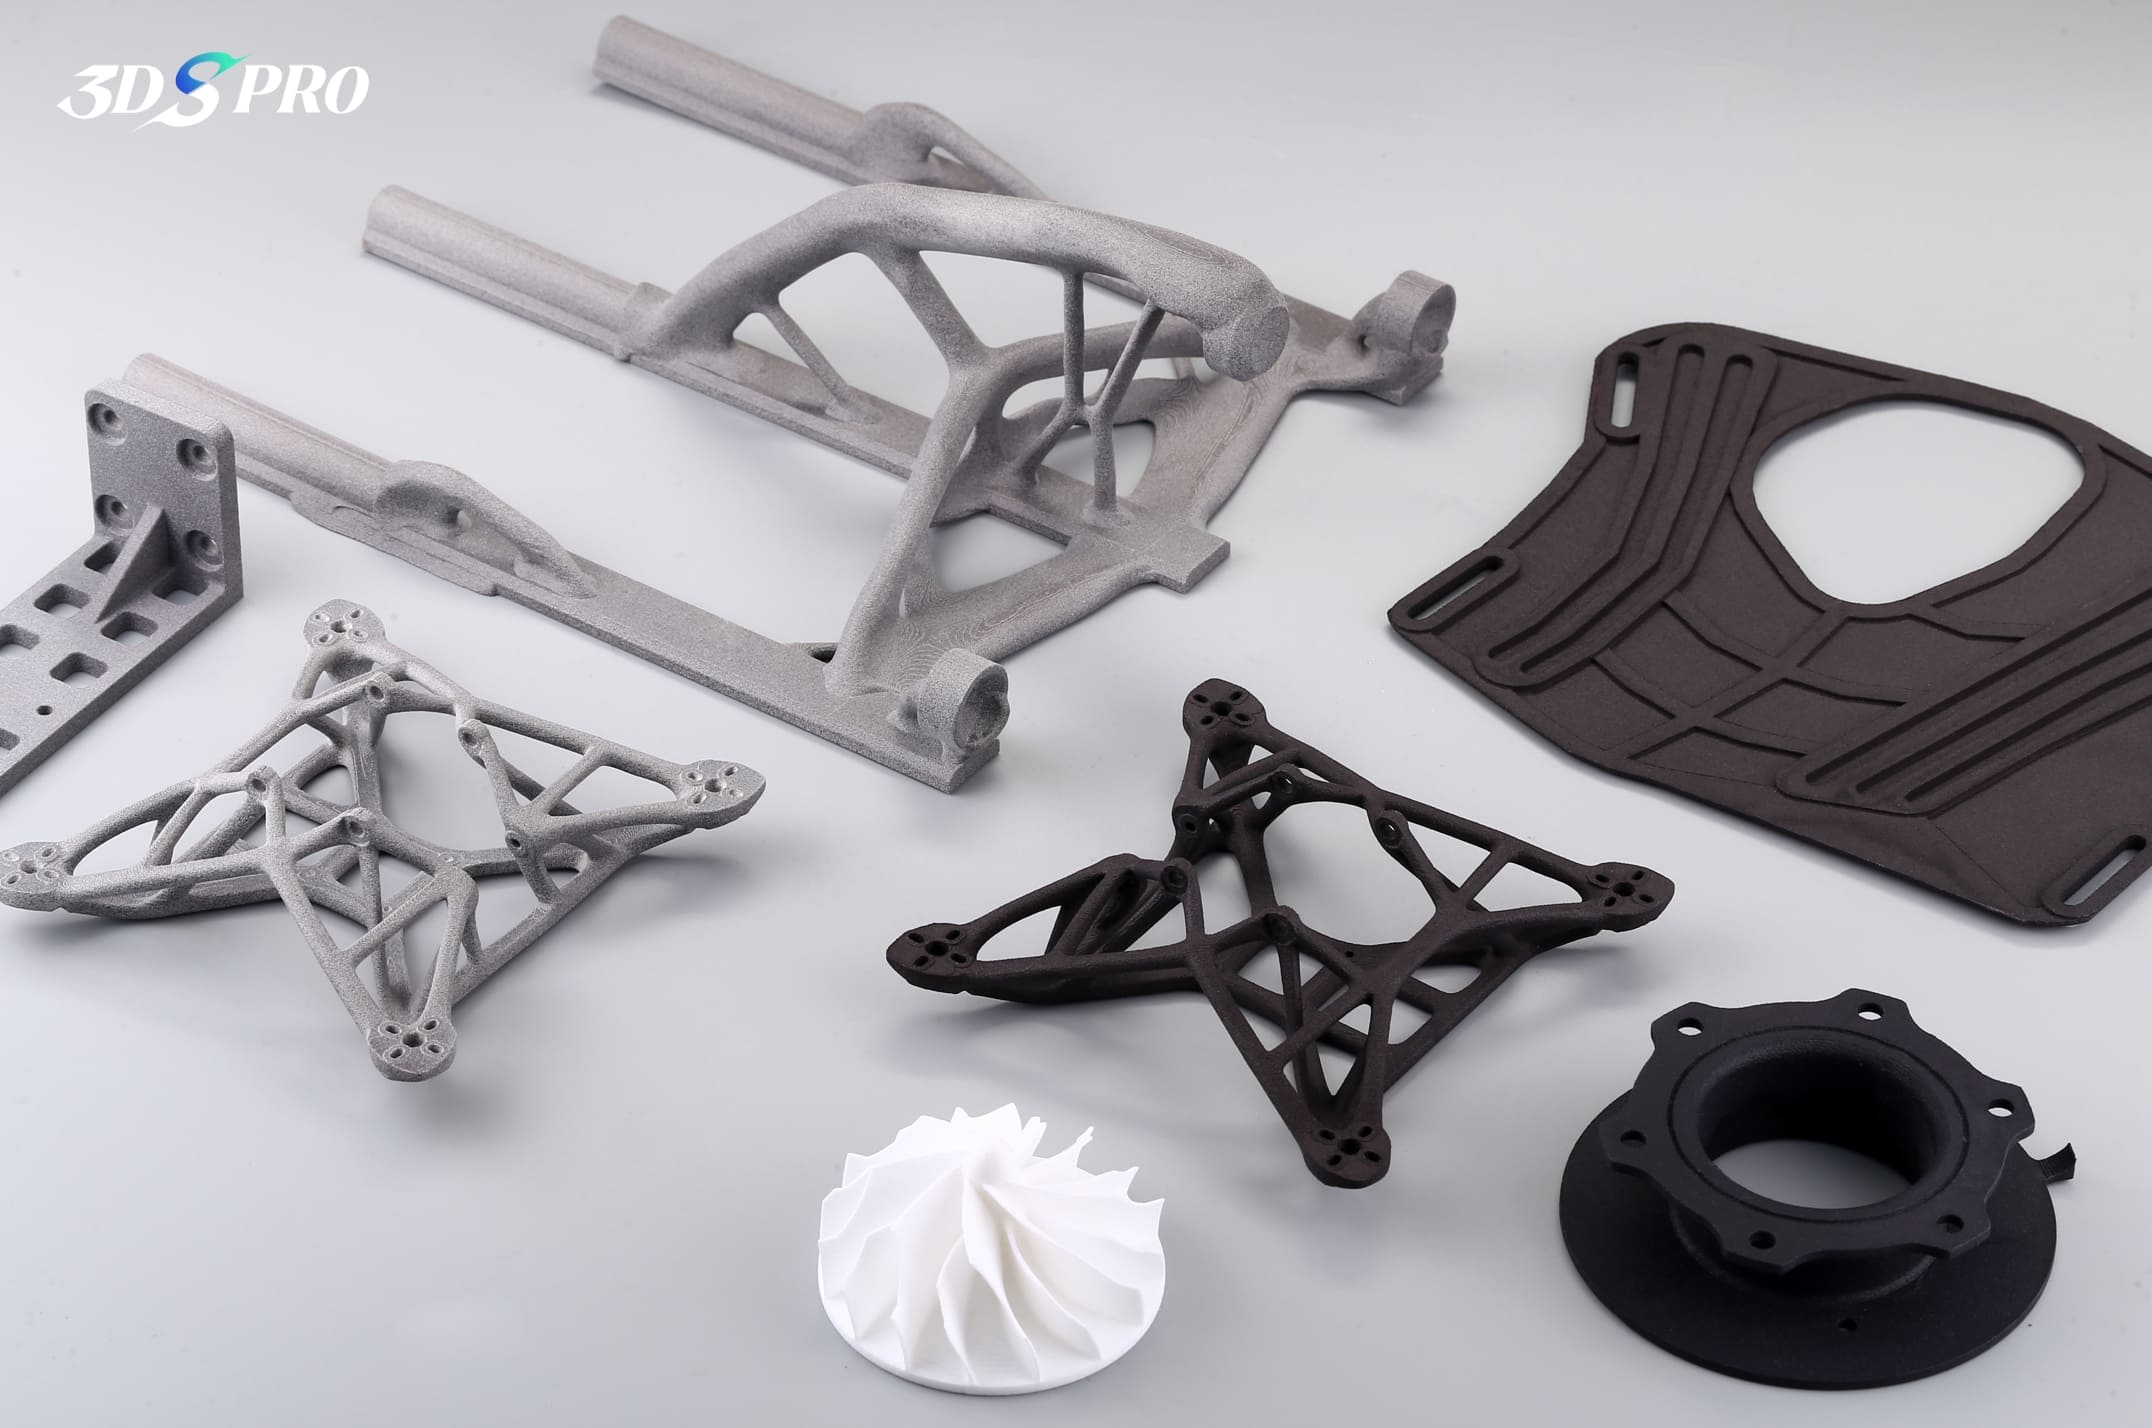 SLS 3D-printed Parts at 3DSPRO